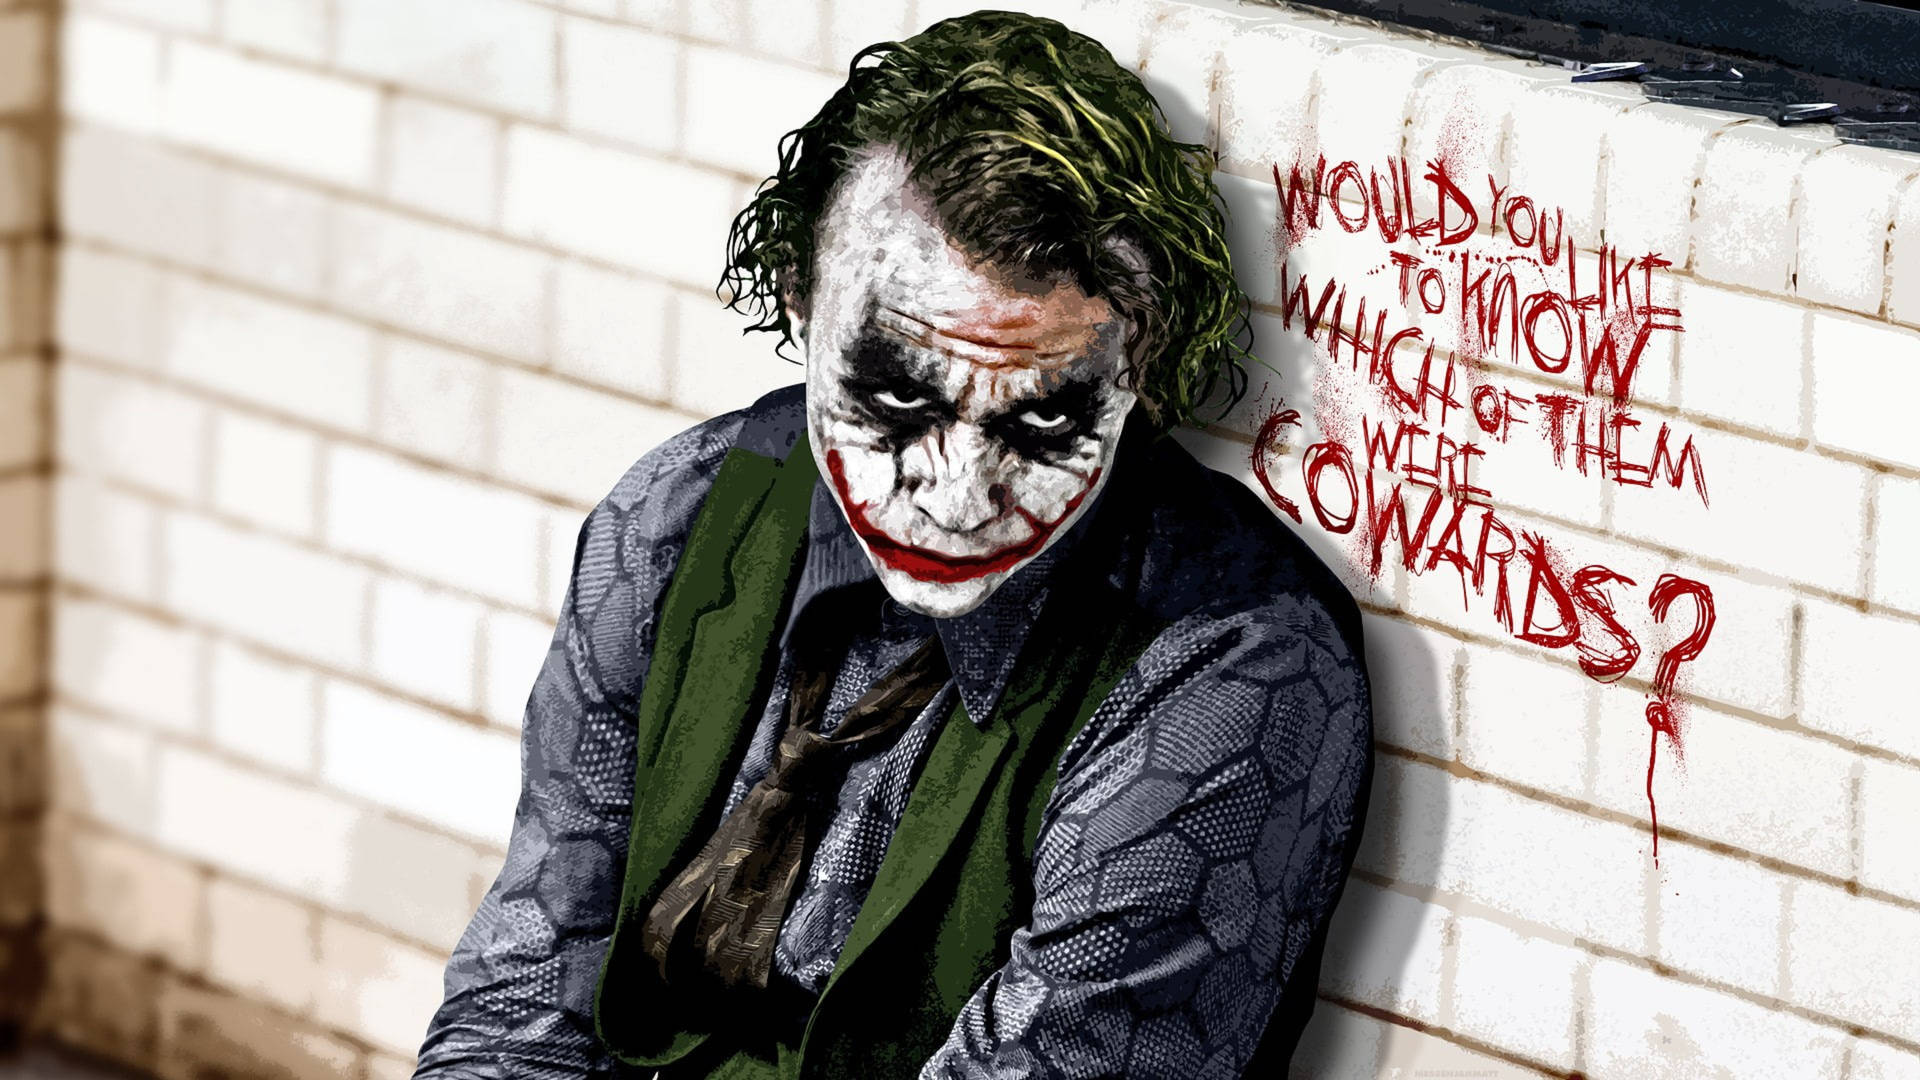 Joker Dark Knight quote wallpaper